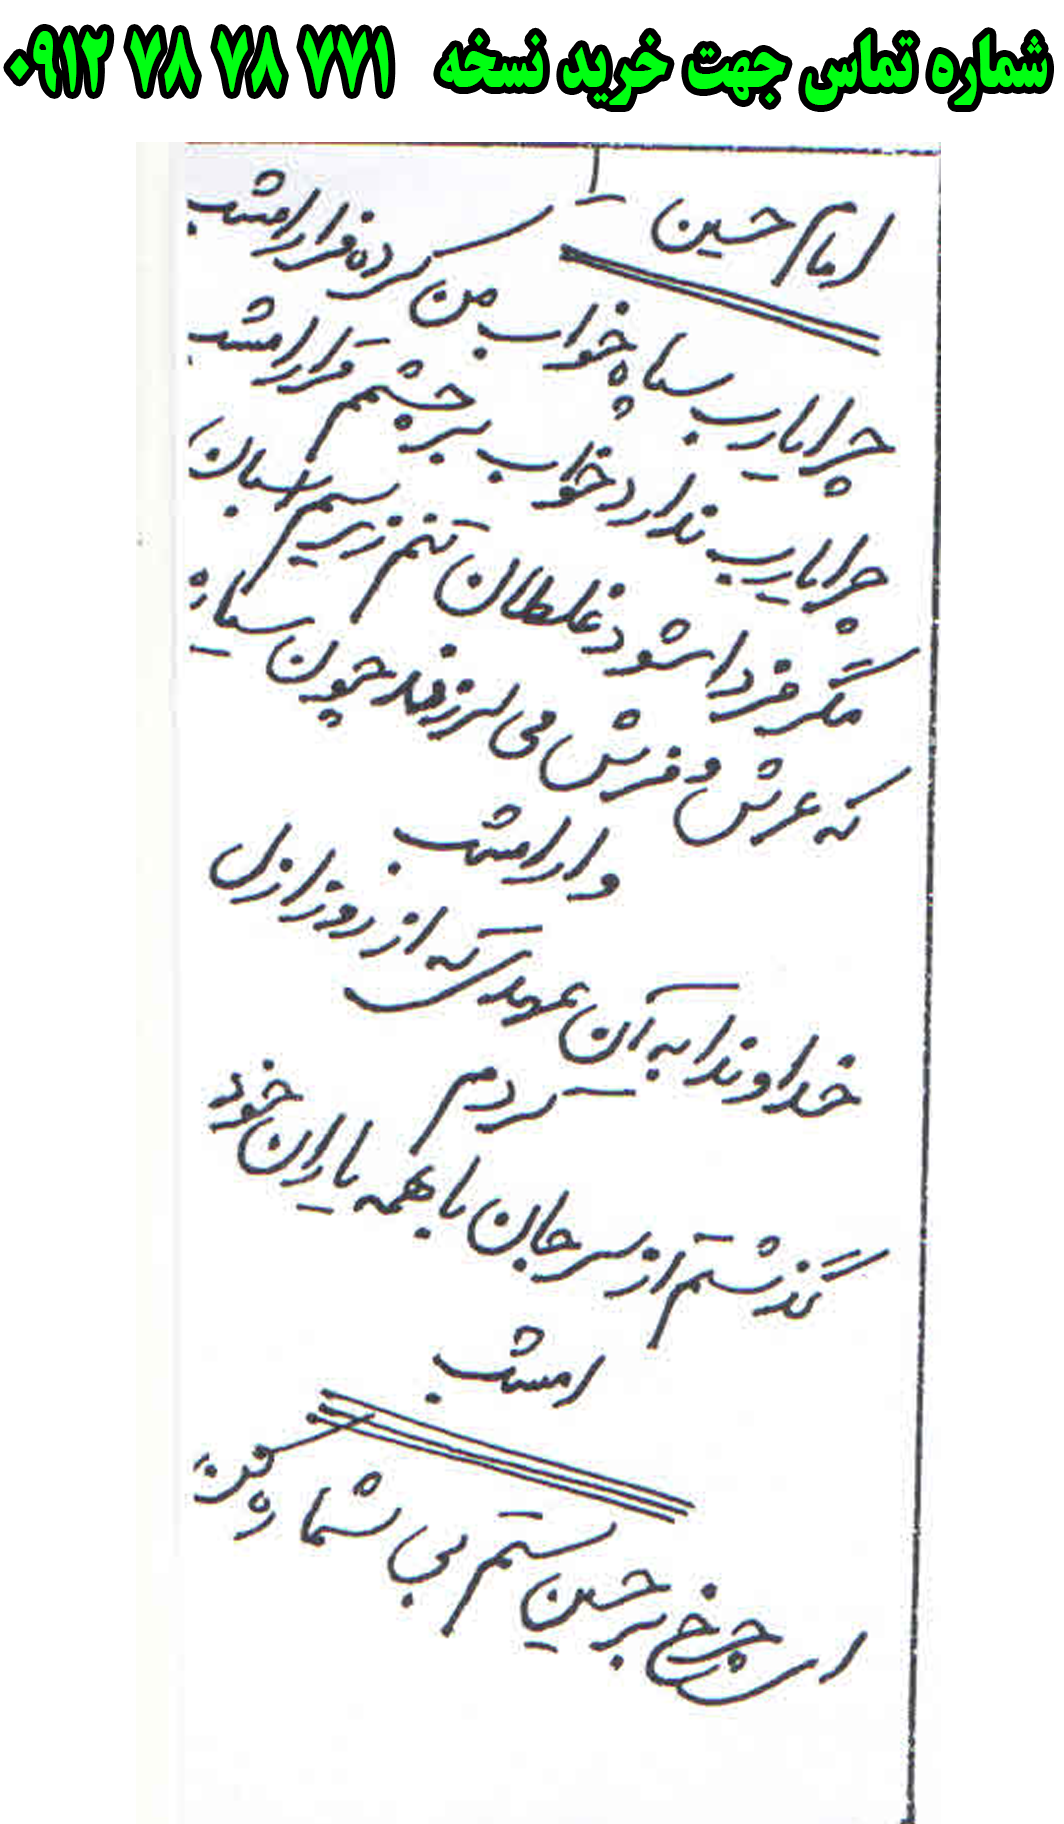 ارسال پستی نسخه تعزیه کامل امام حسین در تعزیه عباس به کل کشور 09127878771